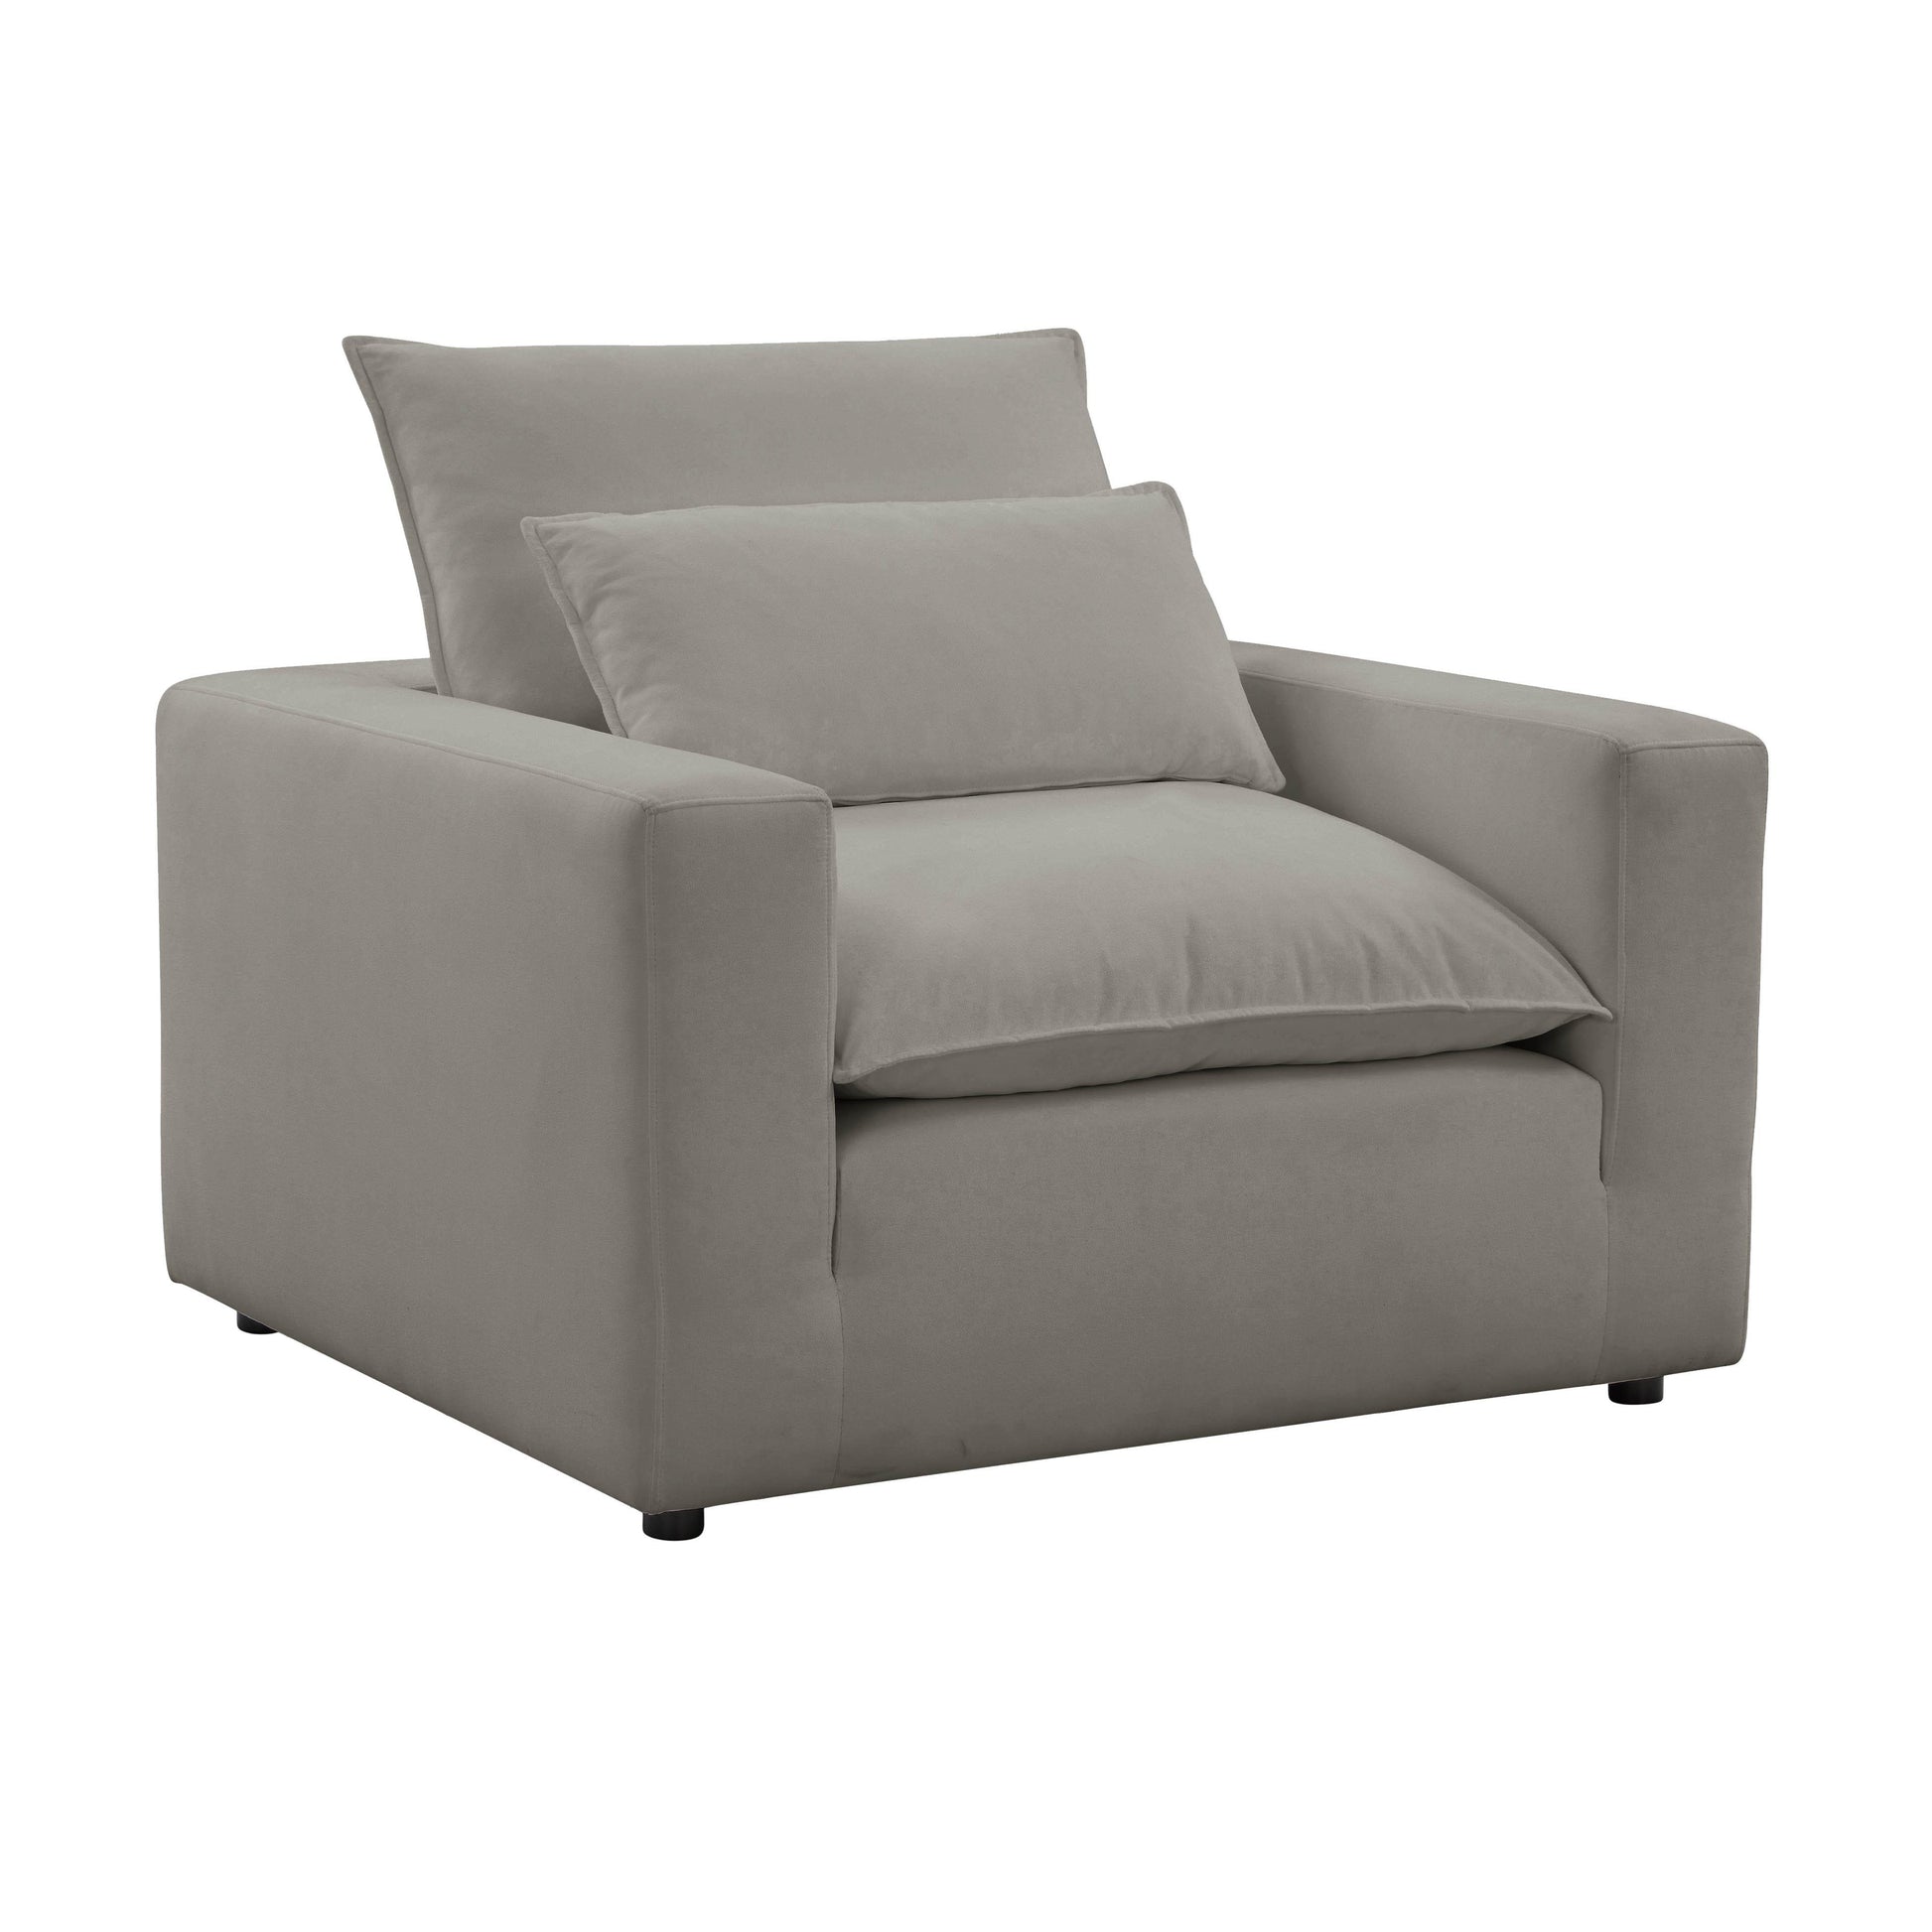 Tov Furniture Cali Slate Arm Chair